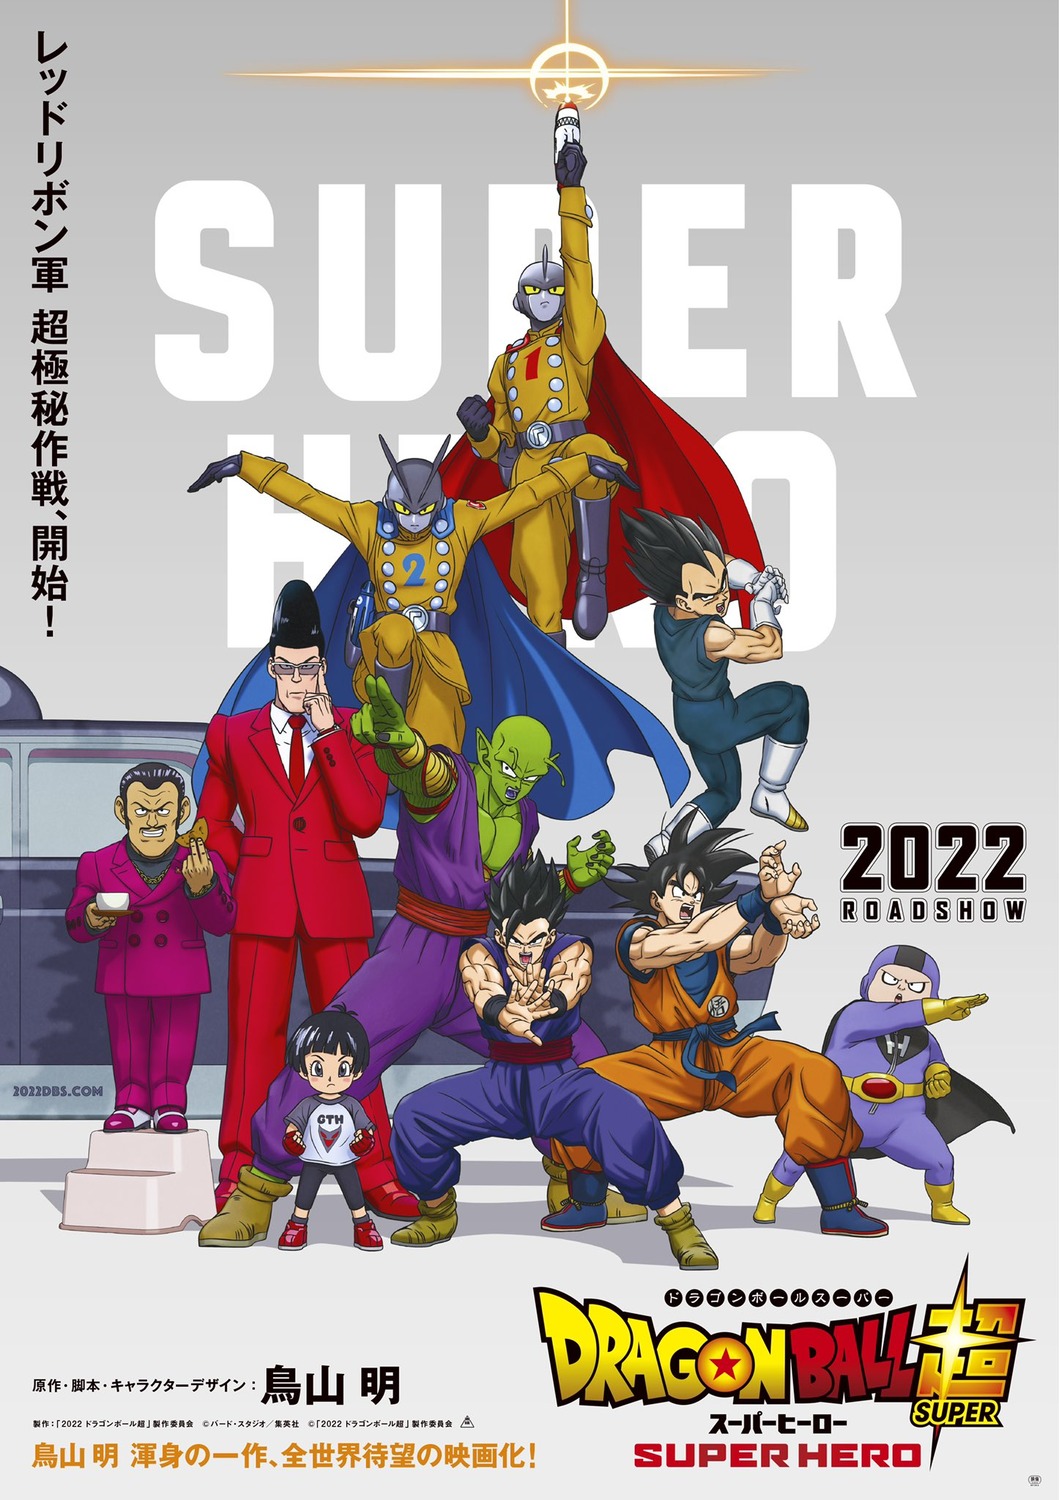 Dragon Ball Super: Super Hero estreia com a missão de resgatar